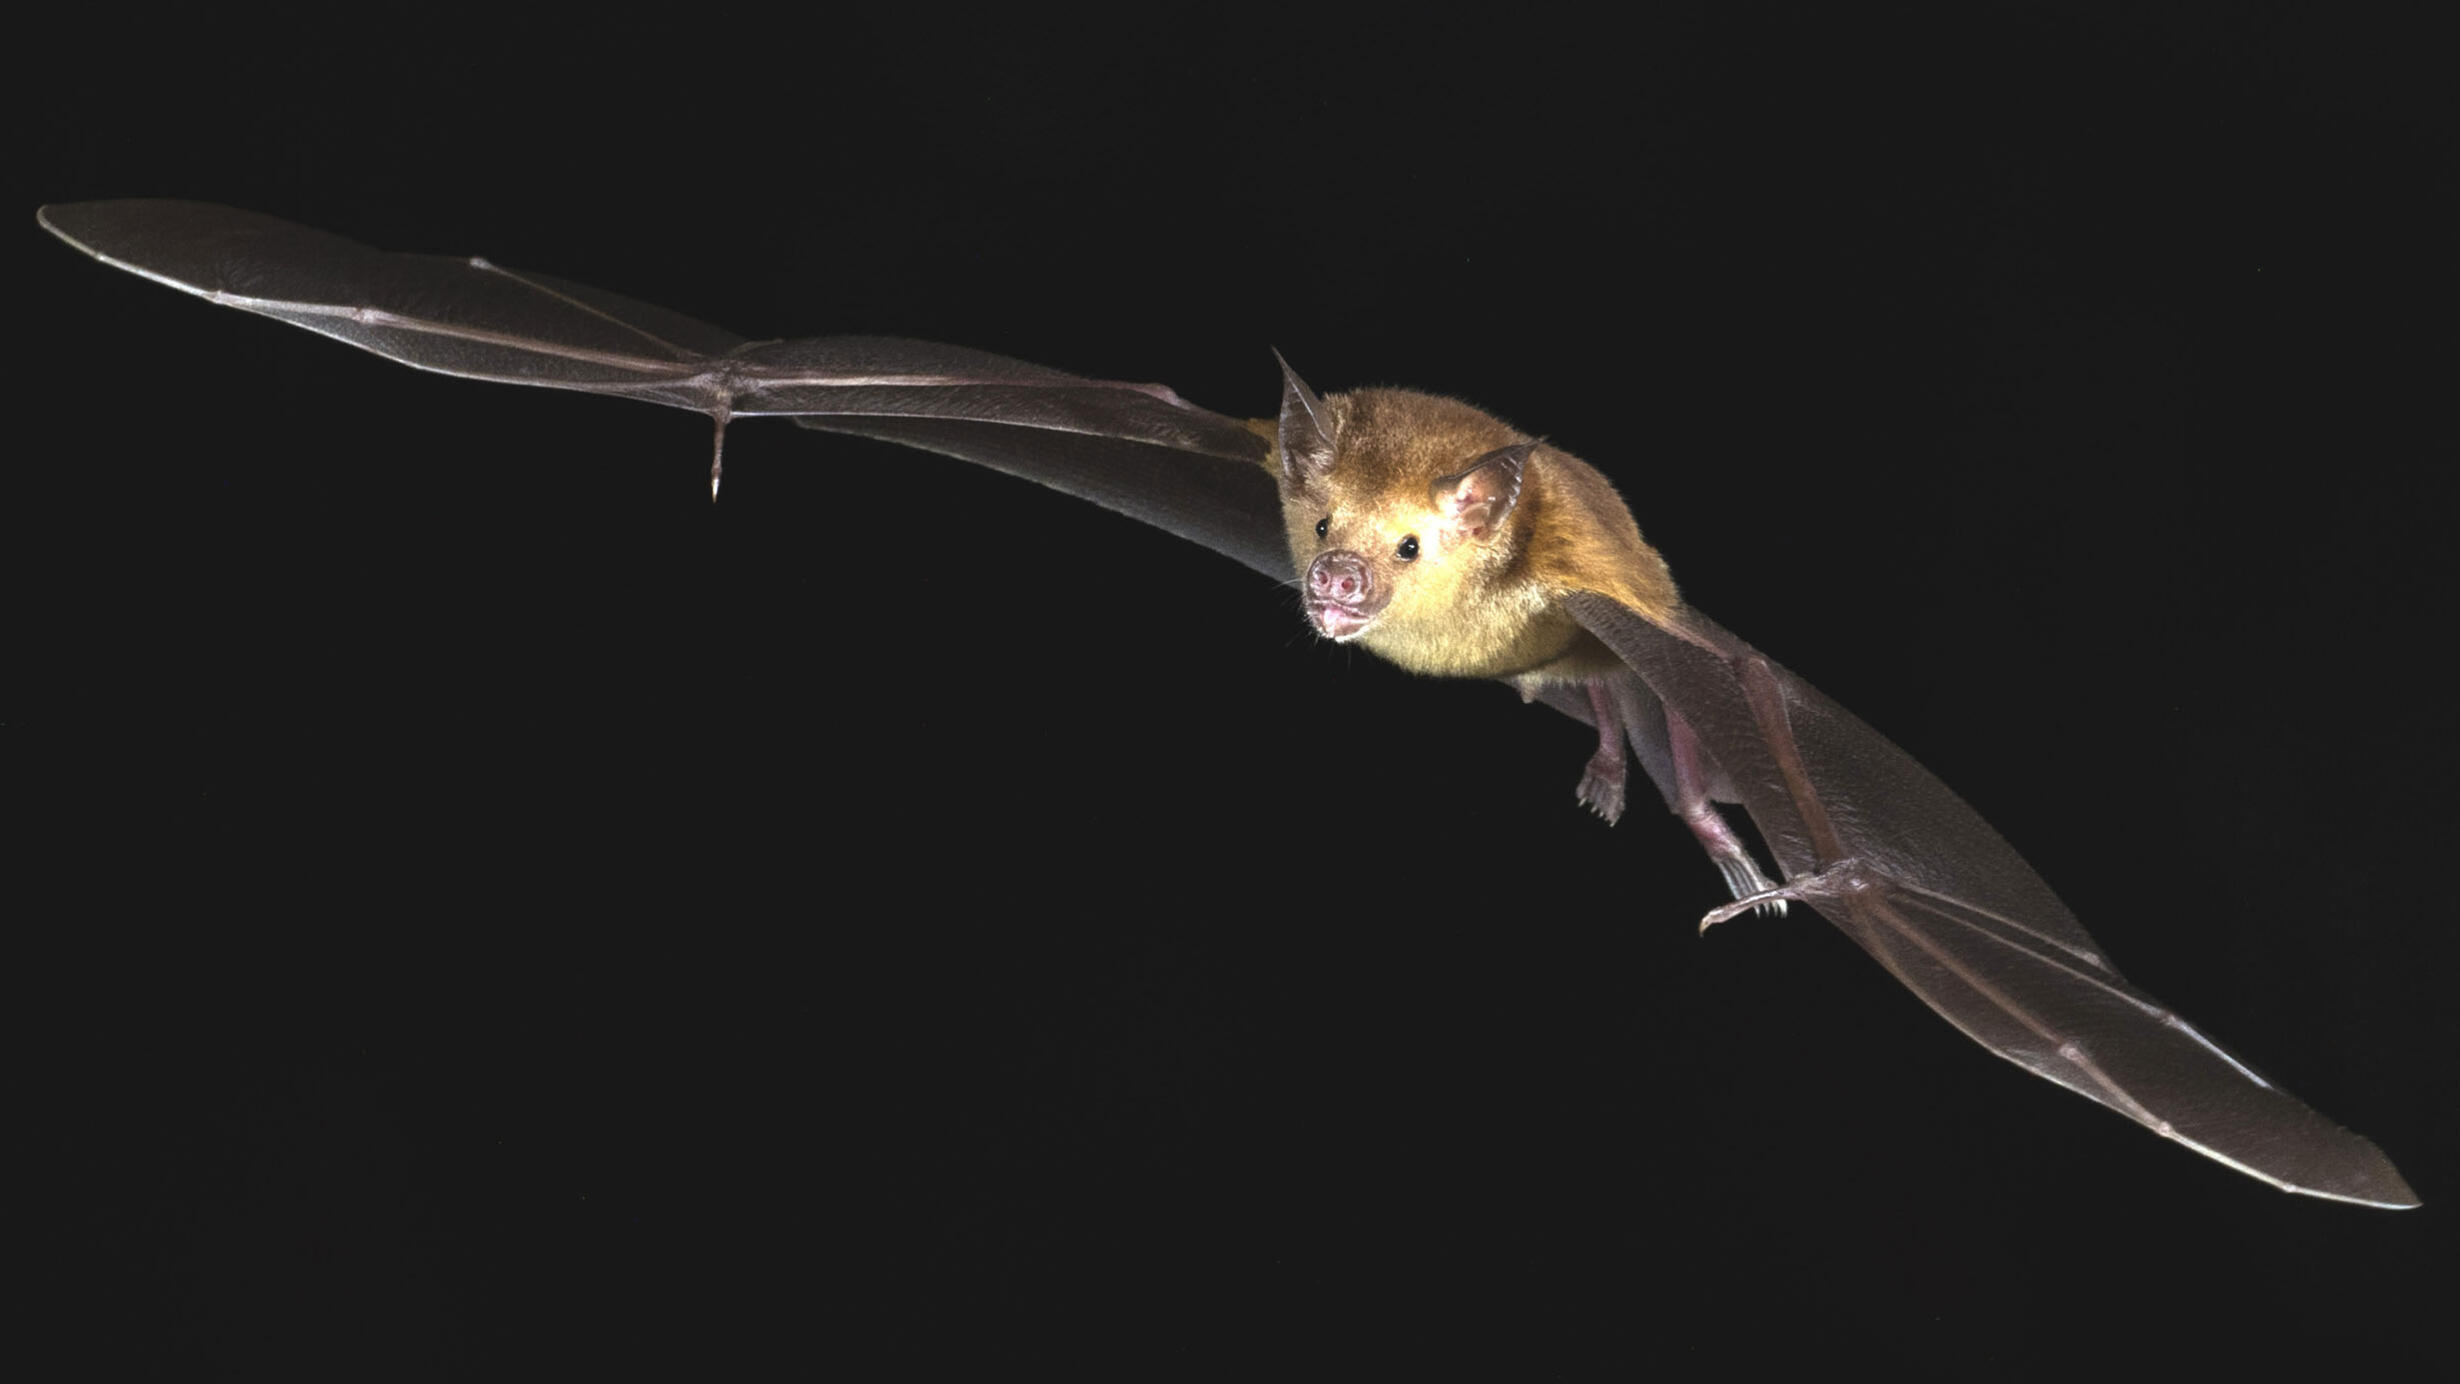 Buffy flower bat (Erophylla sezekorni) with its wings spread wide. 